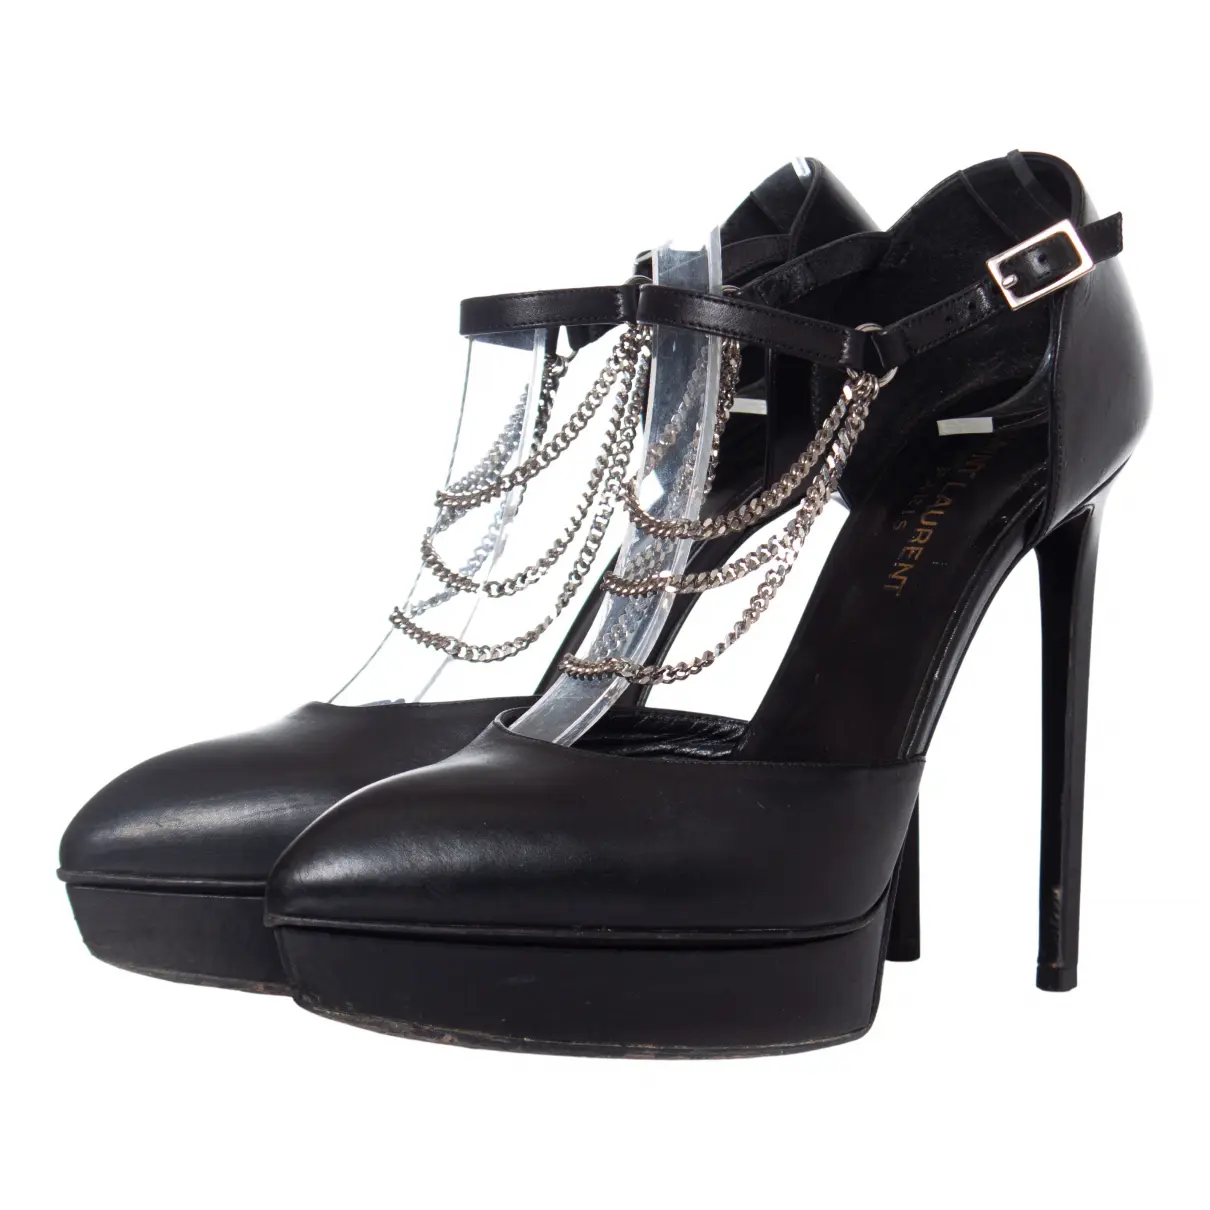 D'orsay leather heels Saint Laurent